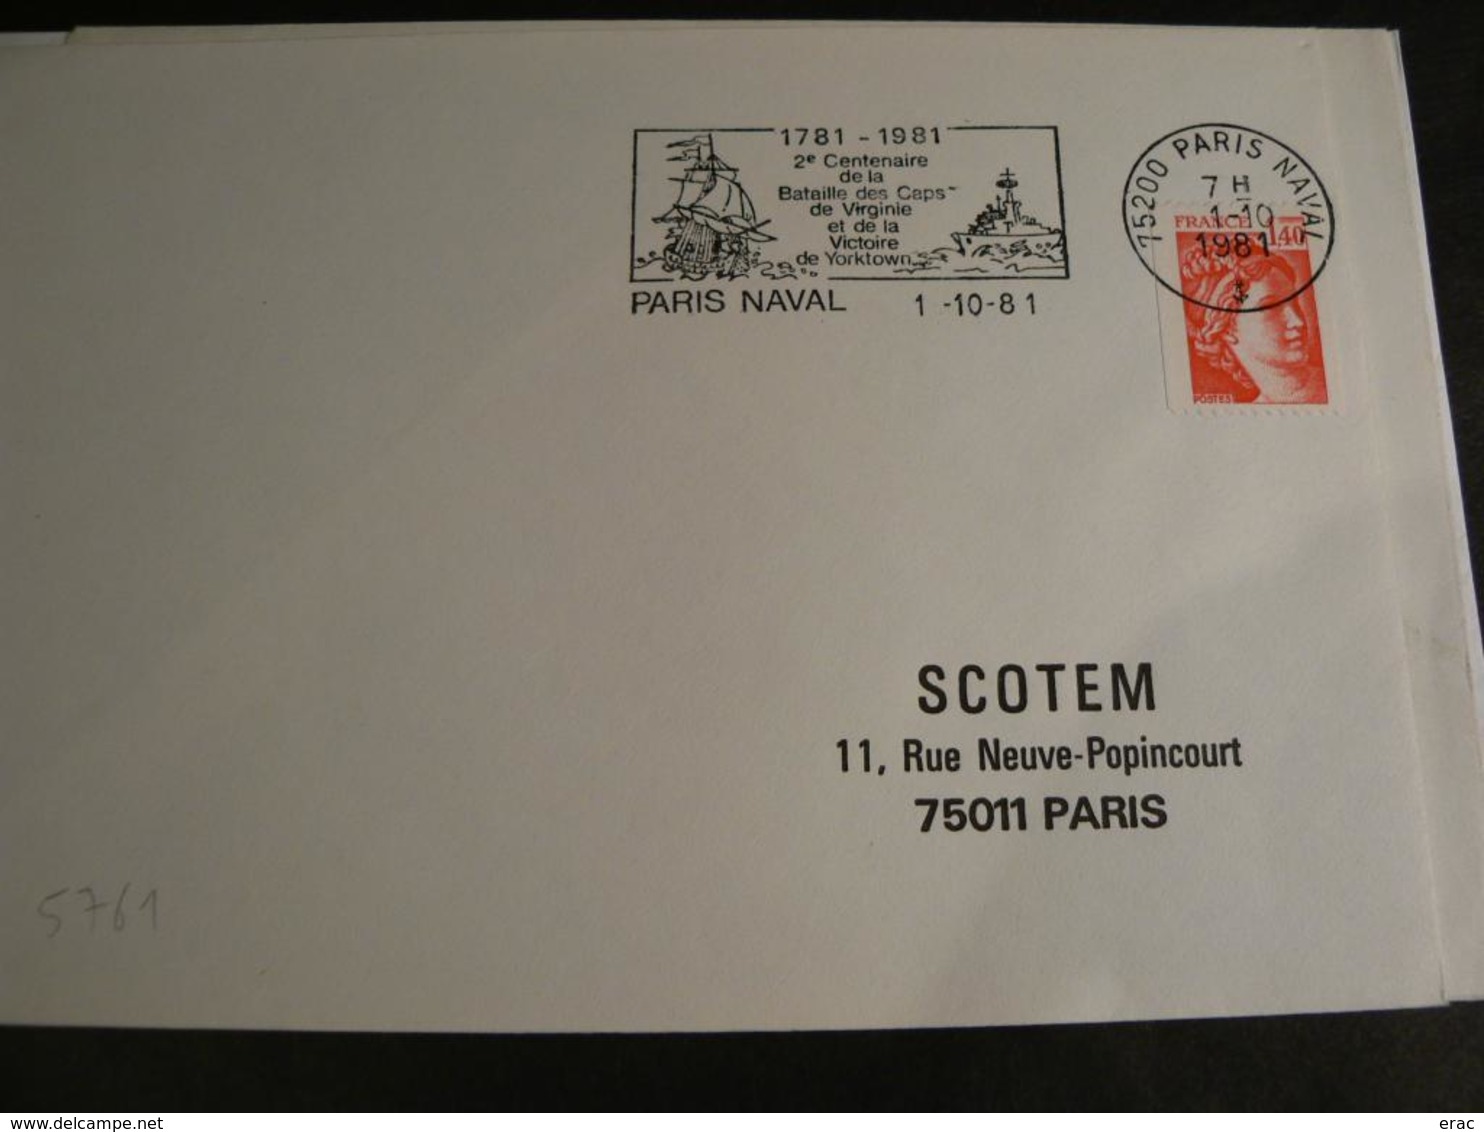 France - Lot de 19 enveloppes avec flammes Poste aux Armées - Naval